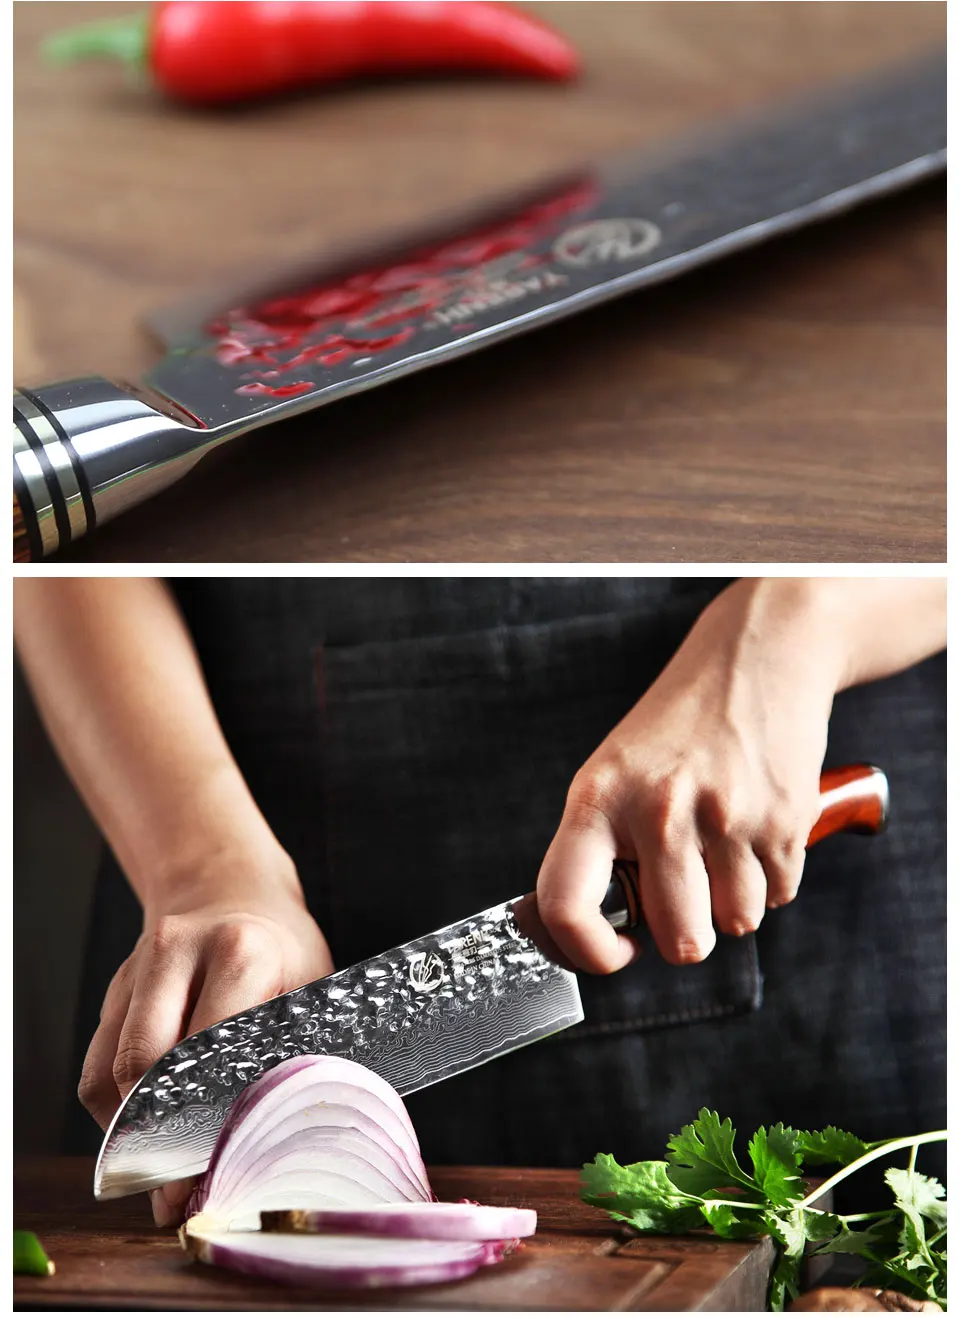 Yarenh набор ножей 6 шт.- кованный нож дамаск кухонный из японский vg10 дамасская сталь- острый ножи кухонные высокого качества